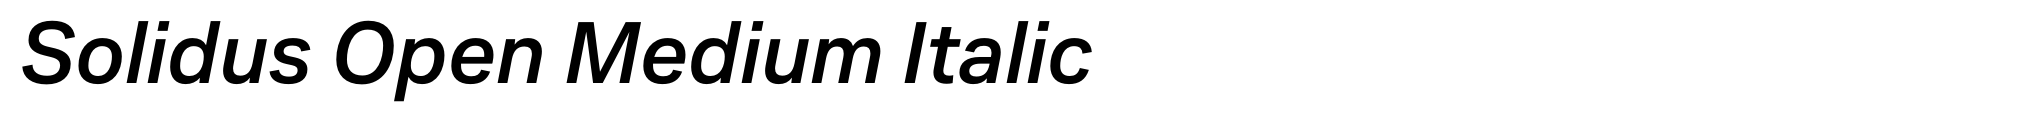 Solidus Open Medium Italic image